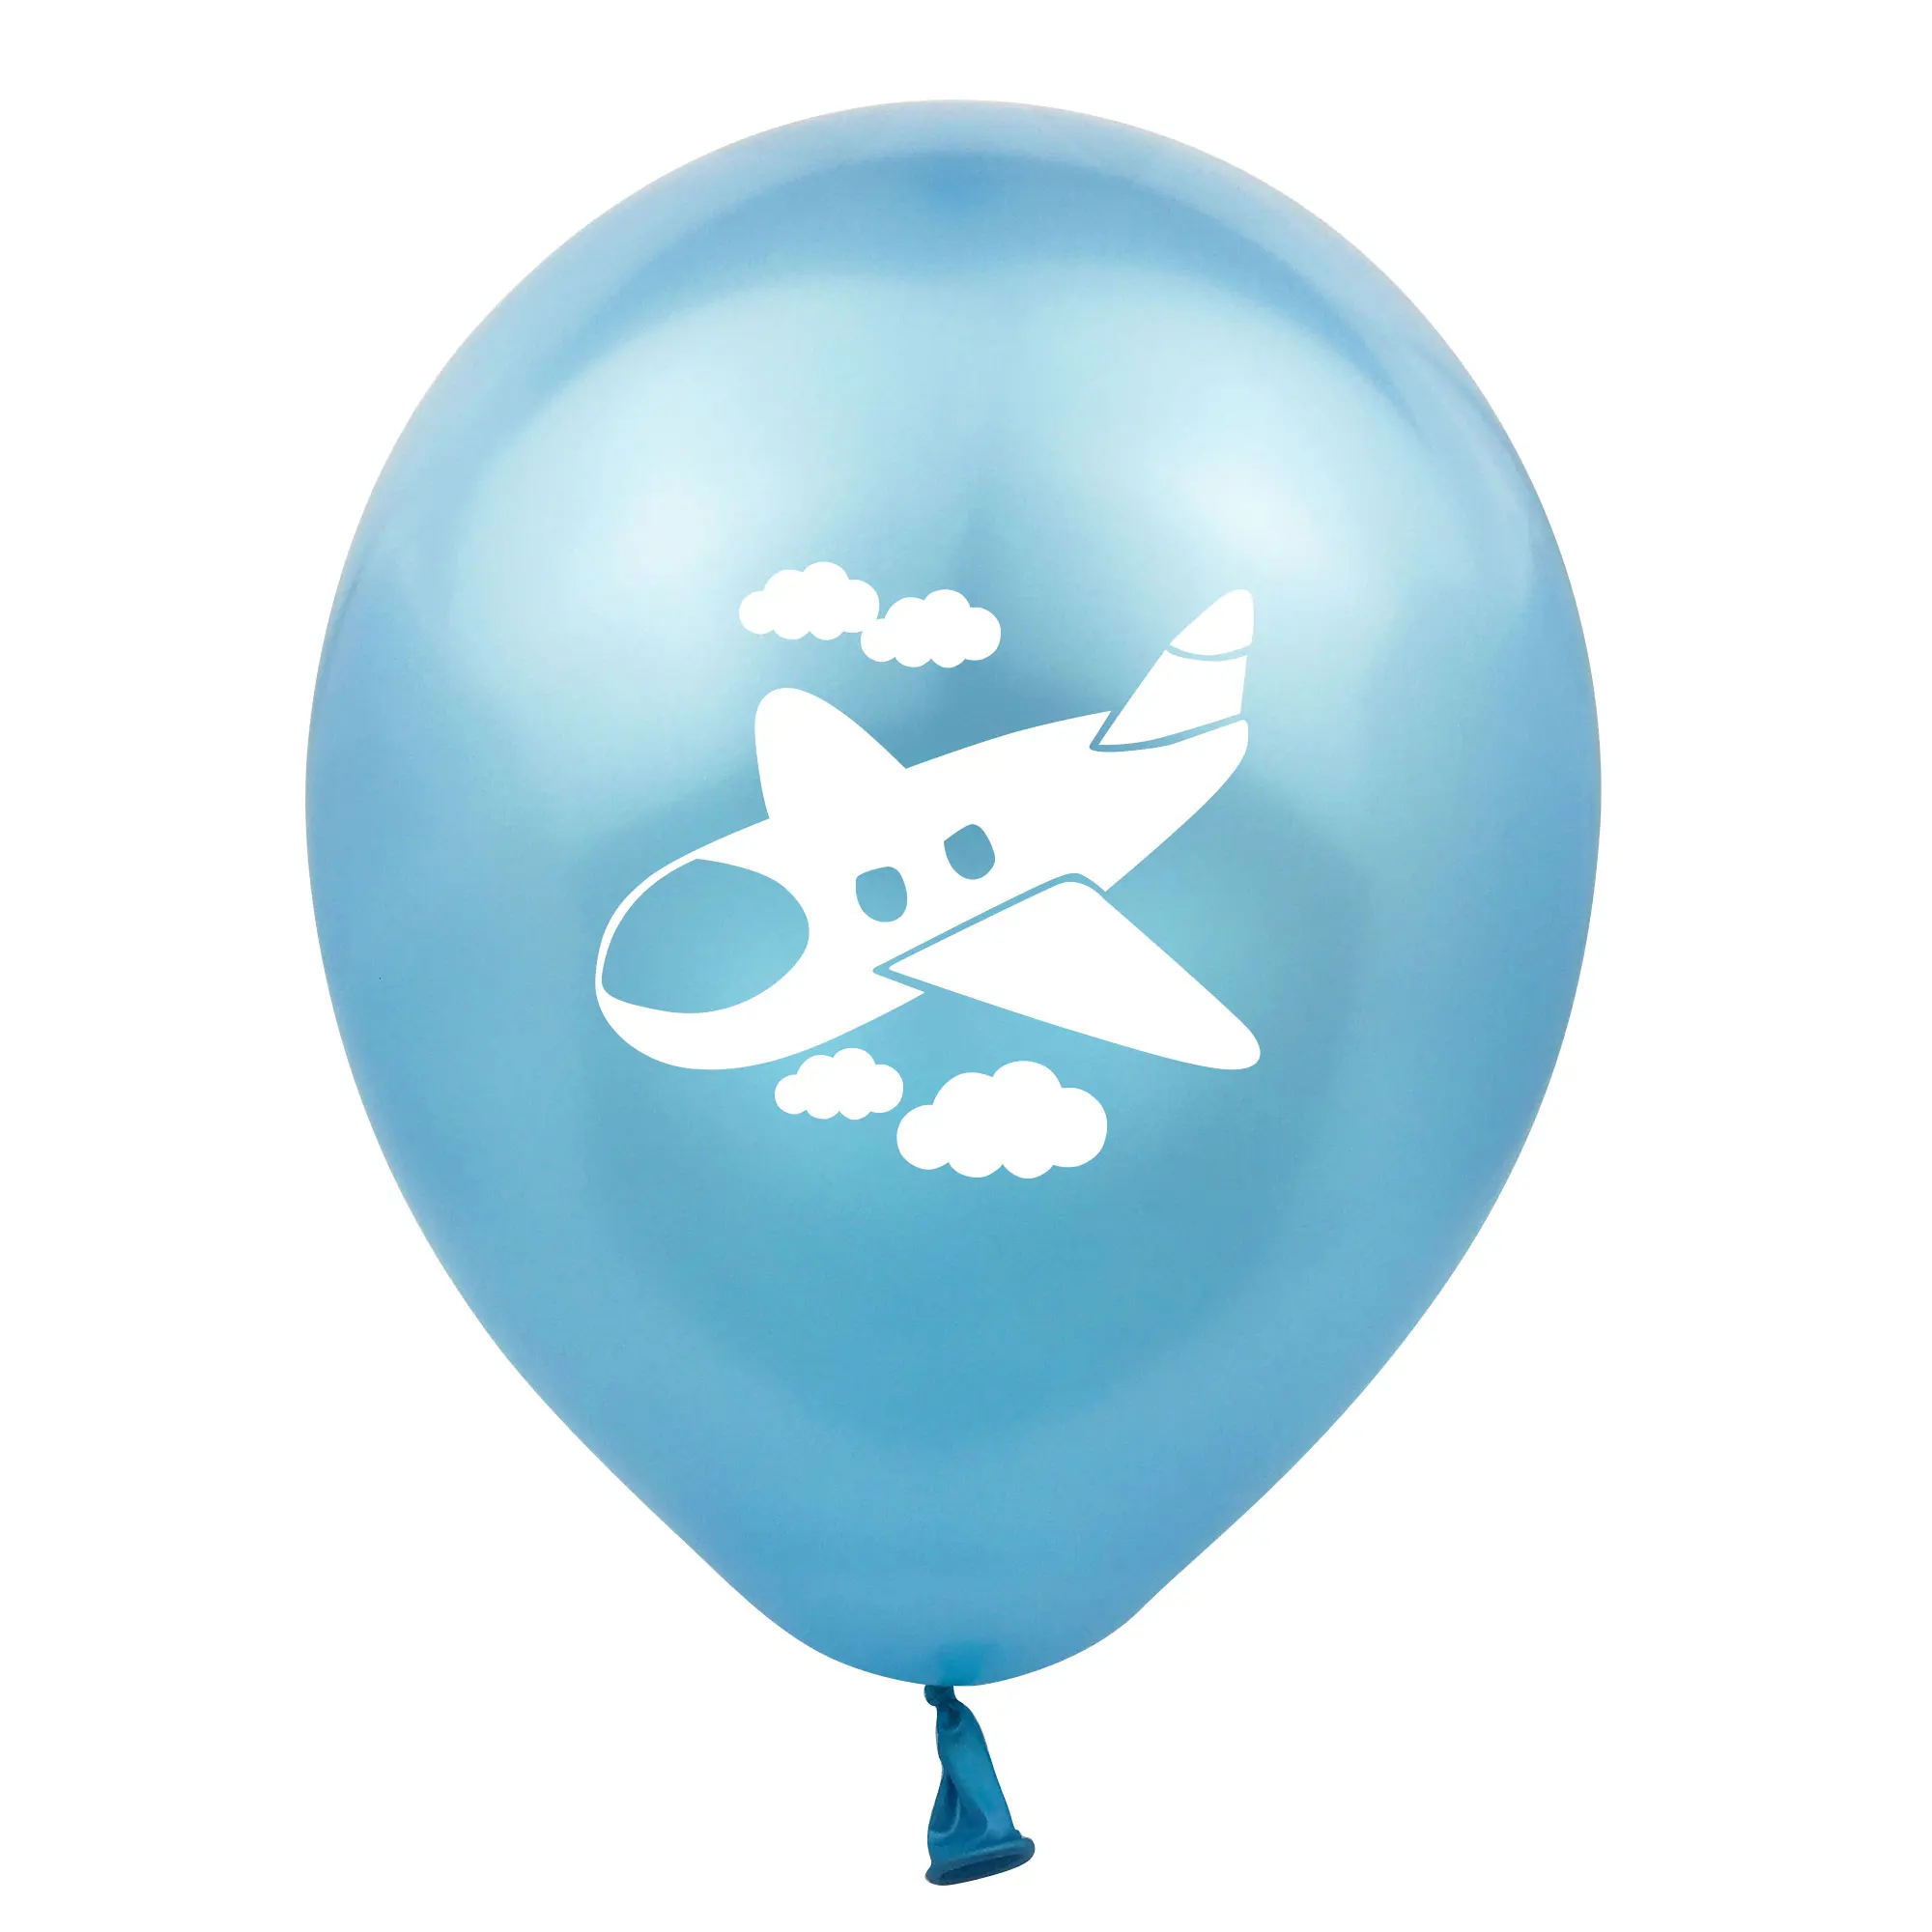 ZLJQ Frist день рождения самолет вечерние воздушные шары 10 шт. 12 дюймов латексный шар для украшения дня рождения детский воздушный шар для мальчика баллон - Цвет: light blue